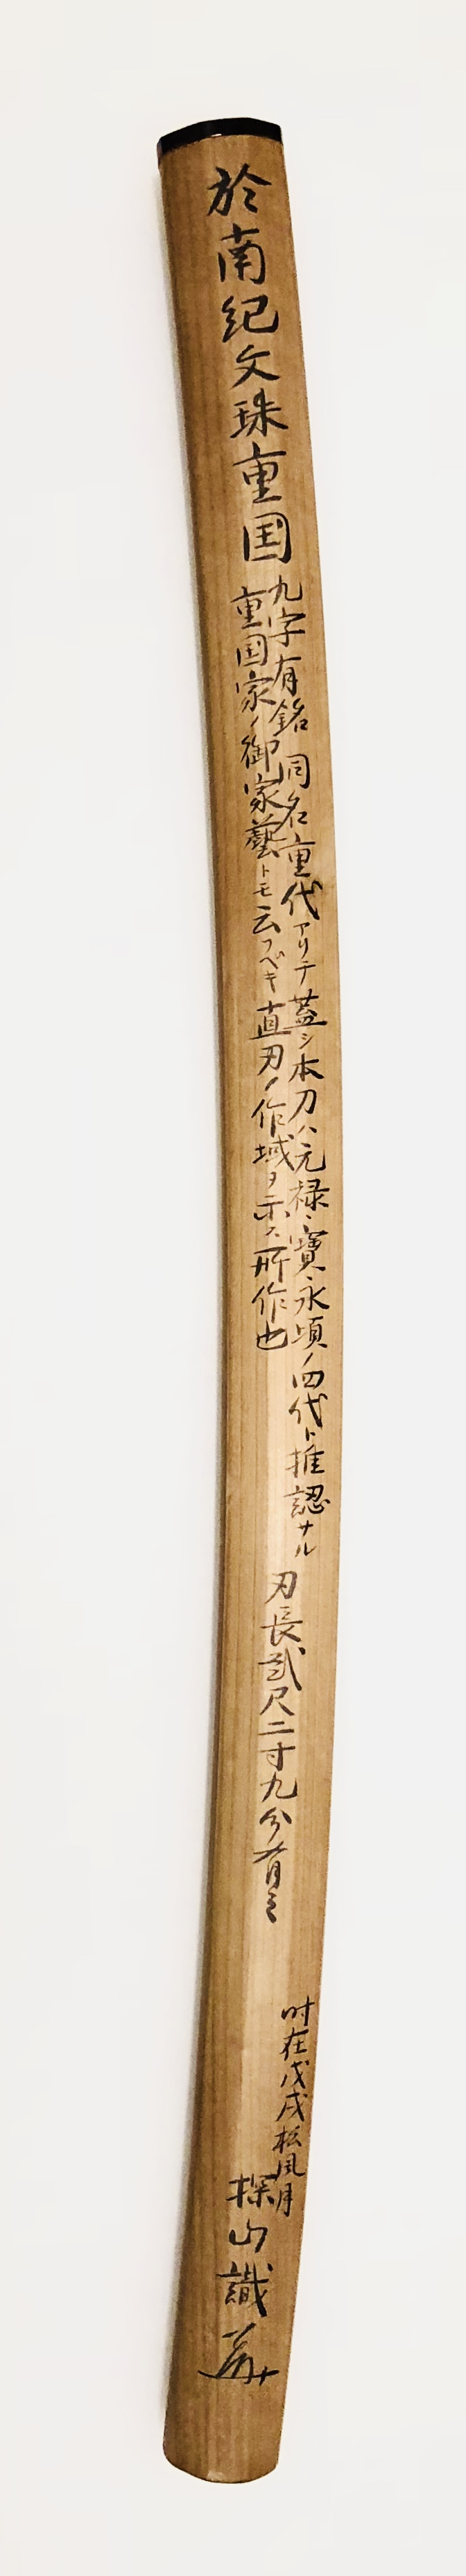 刀 於南紀文殊重国造之 / Katana Oite Nanki Monjyu Shigekuni Kore wo tsukuru